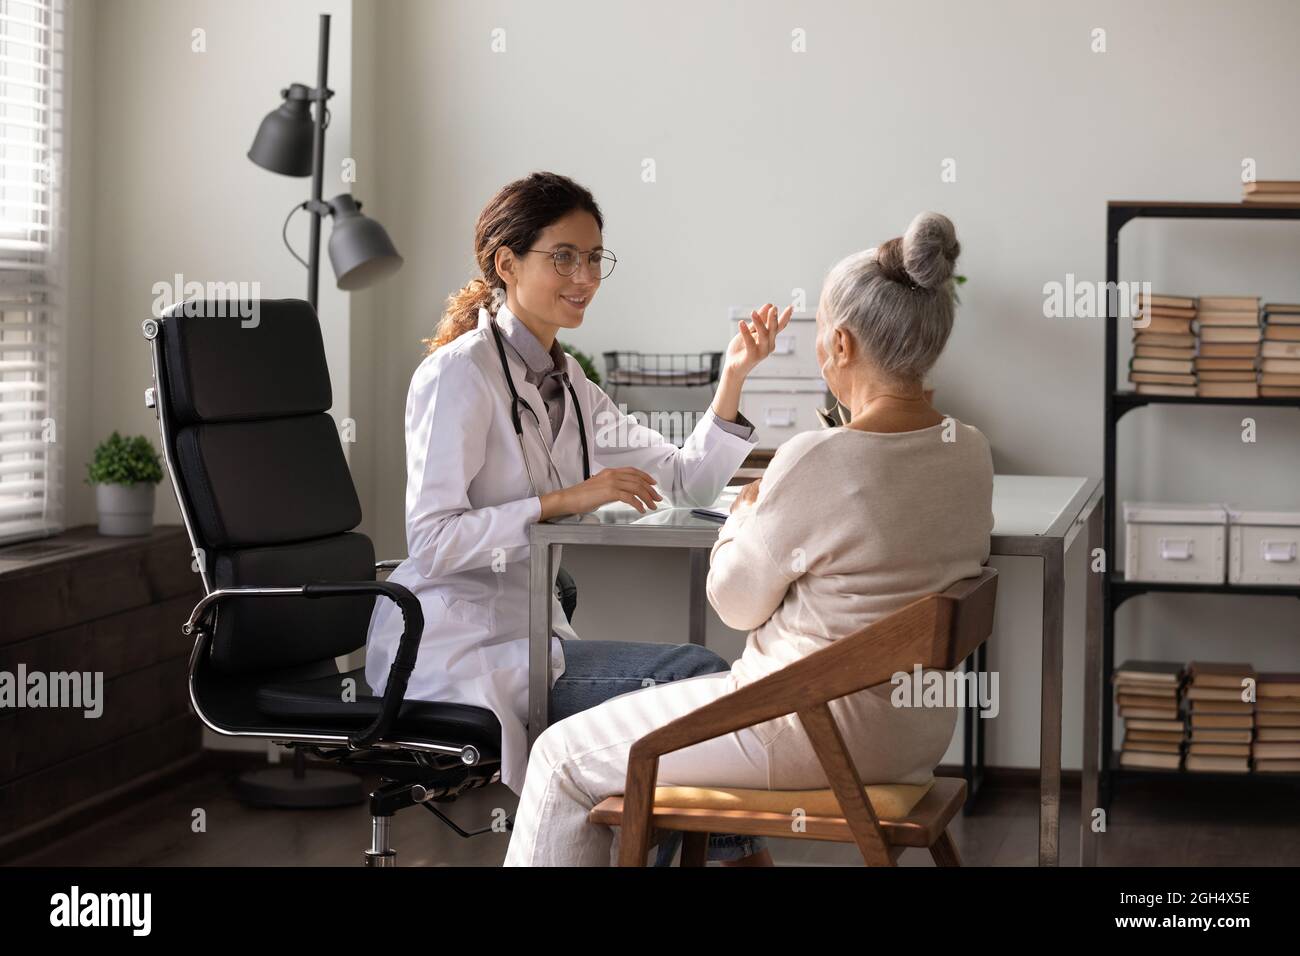 Lächelnder junger Arzt, der Ratschläge gibt und mit einer älteren Frau spricht Stockfoto